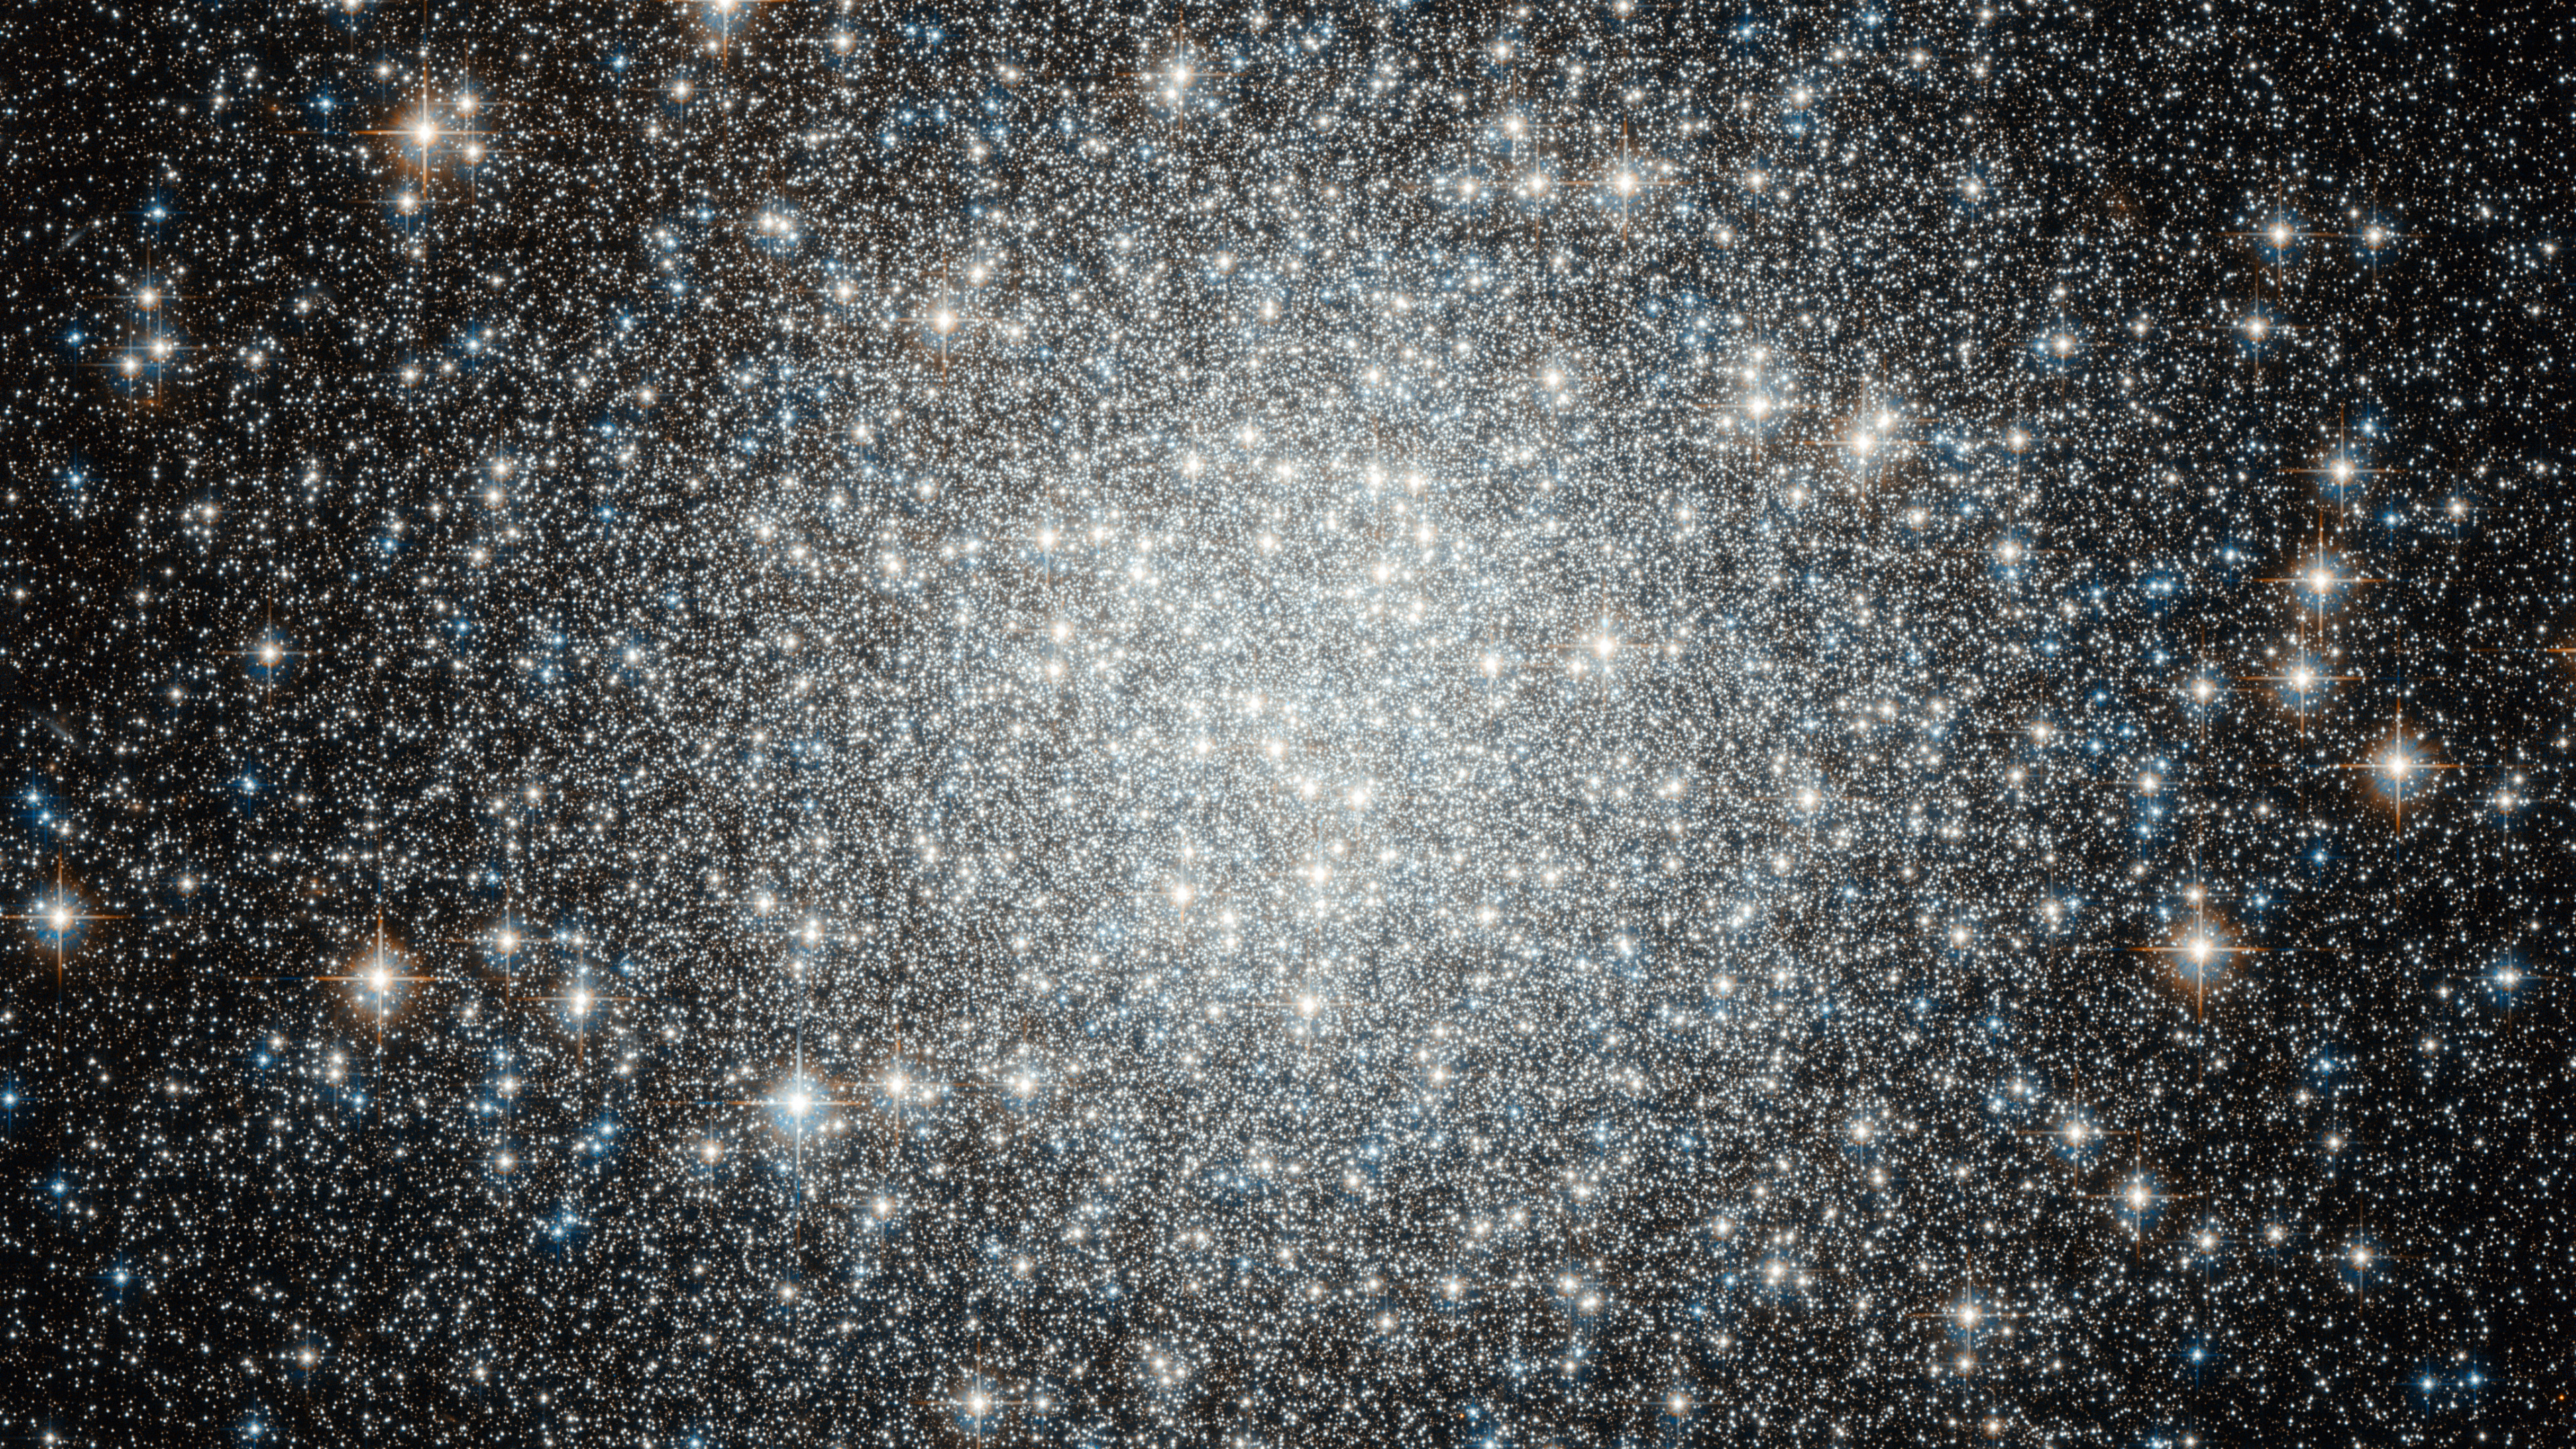 球状星团, 星团, 明星, 天文学, 银河系 壁纸 3840x2160 允许